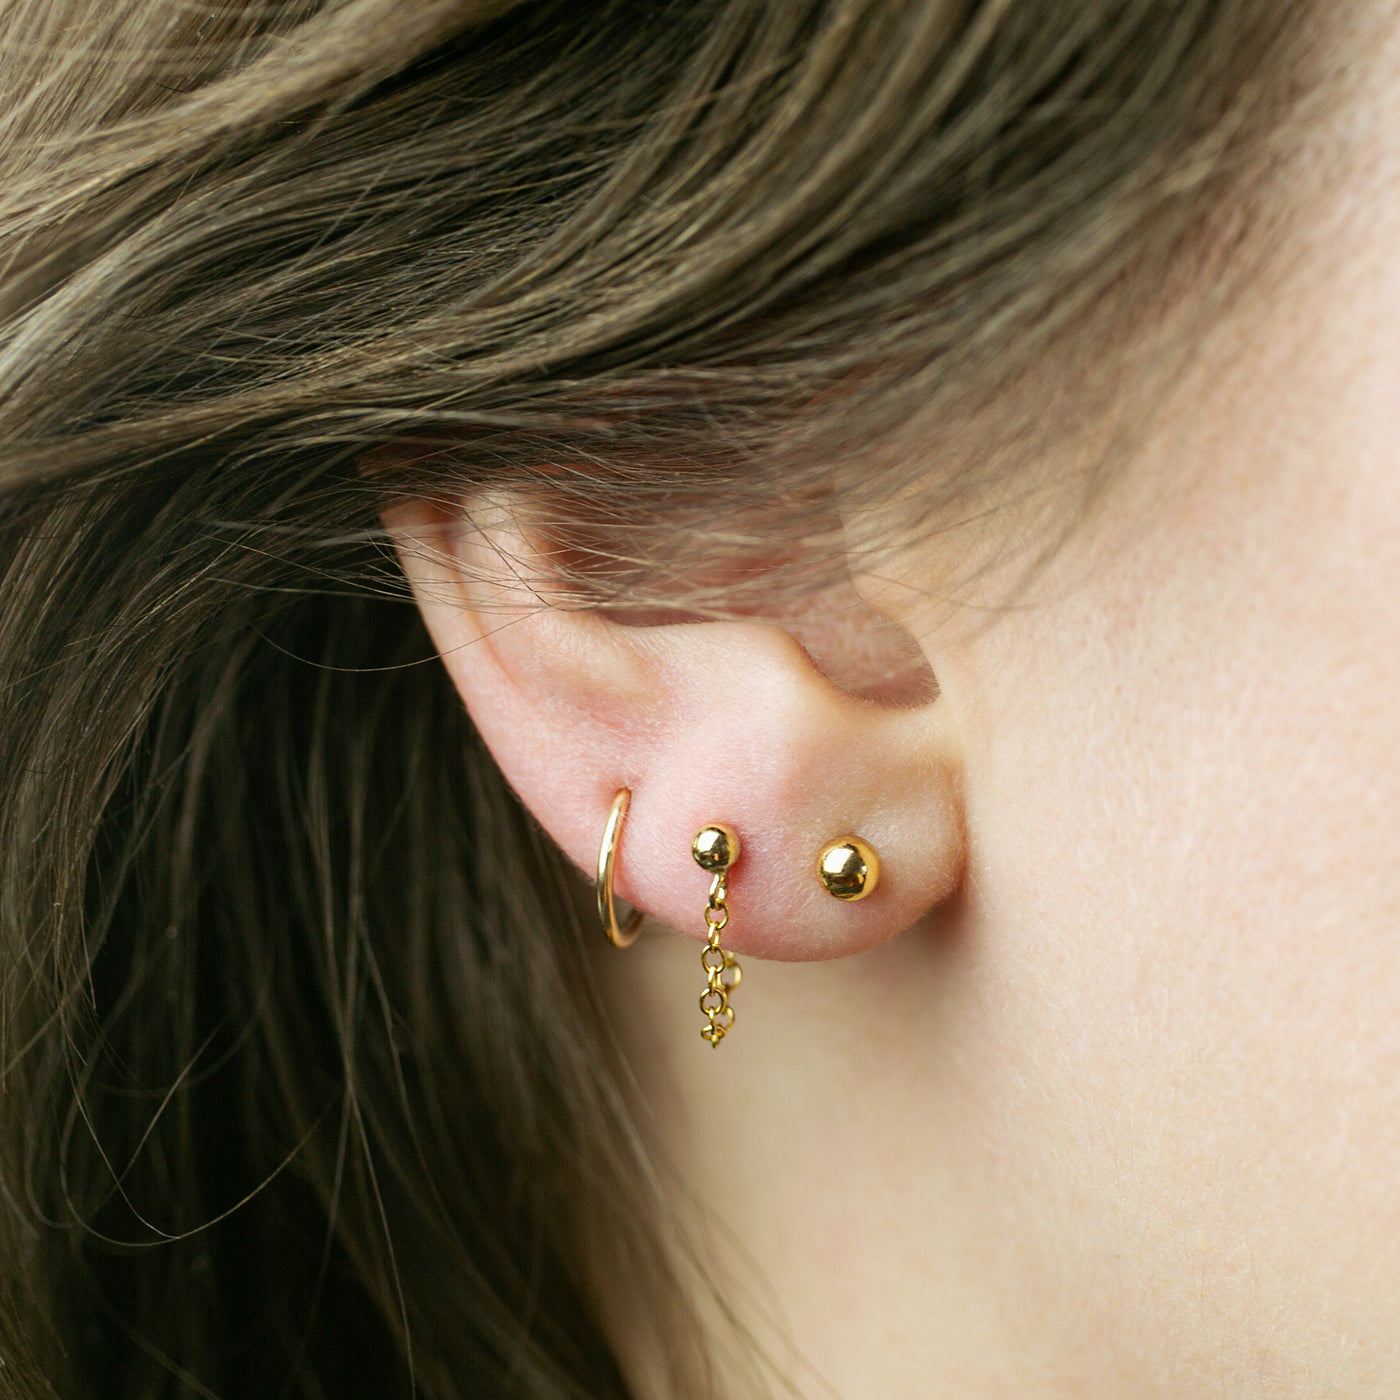 Earring Sets | Earings piercings, Stud earrings, Pretty ear piercings